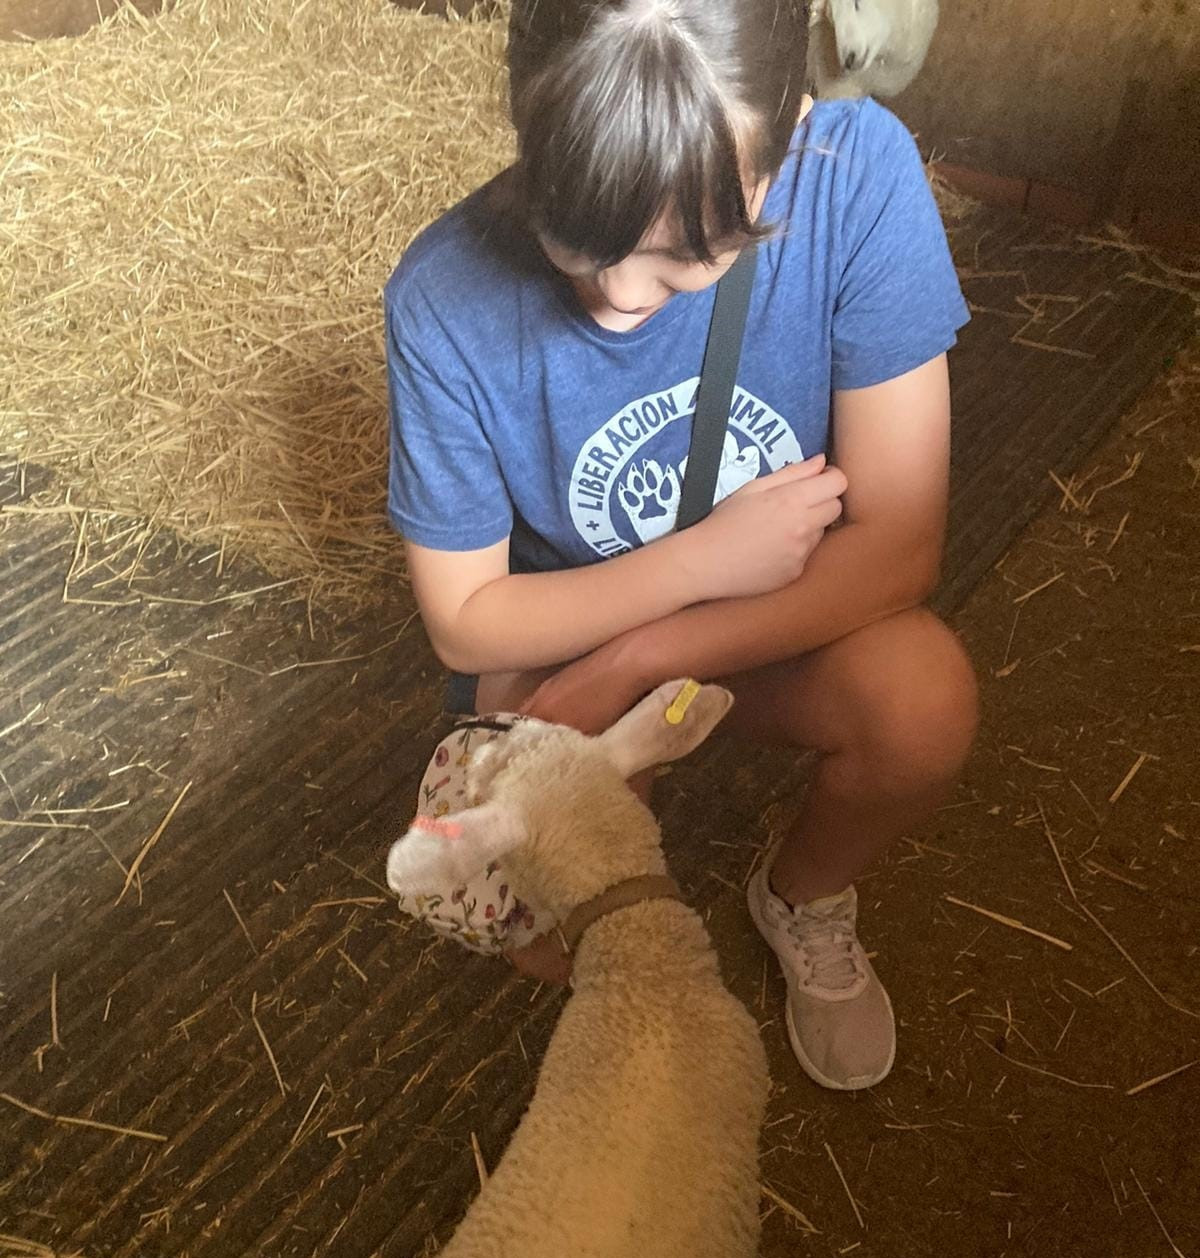  Entrevista a Chloe, una adolescente que lucha por la liberación animal 